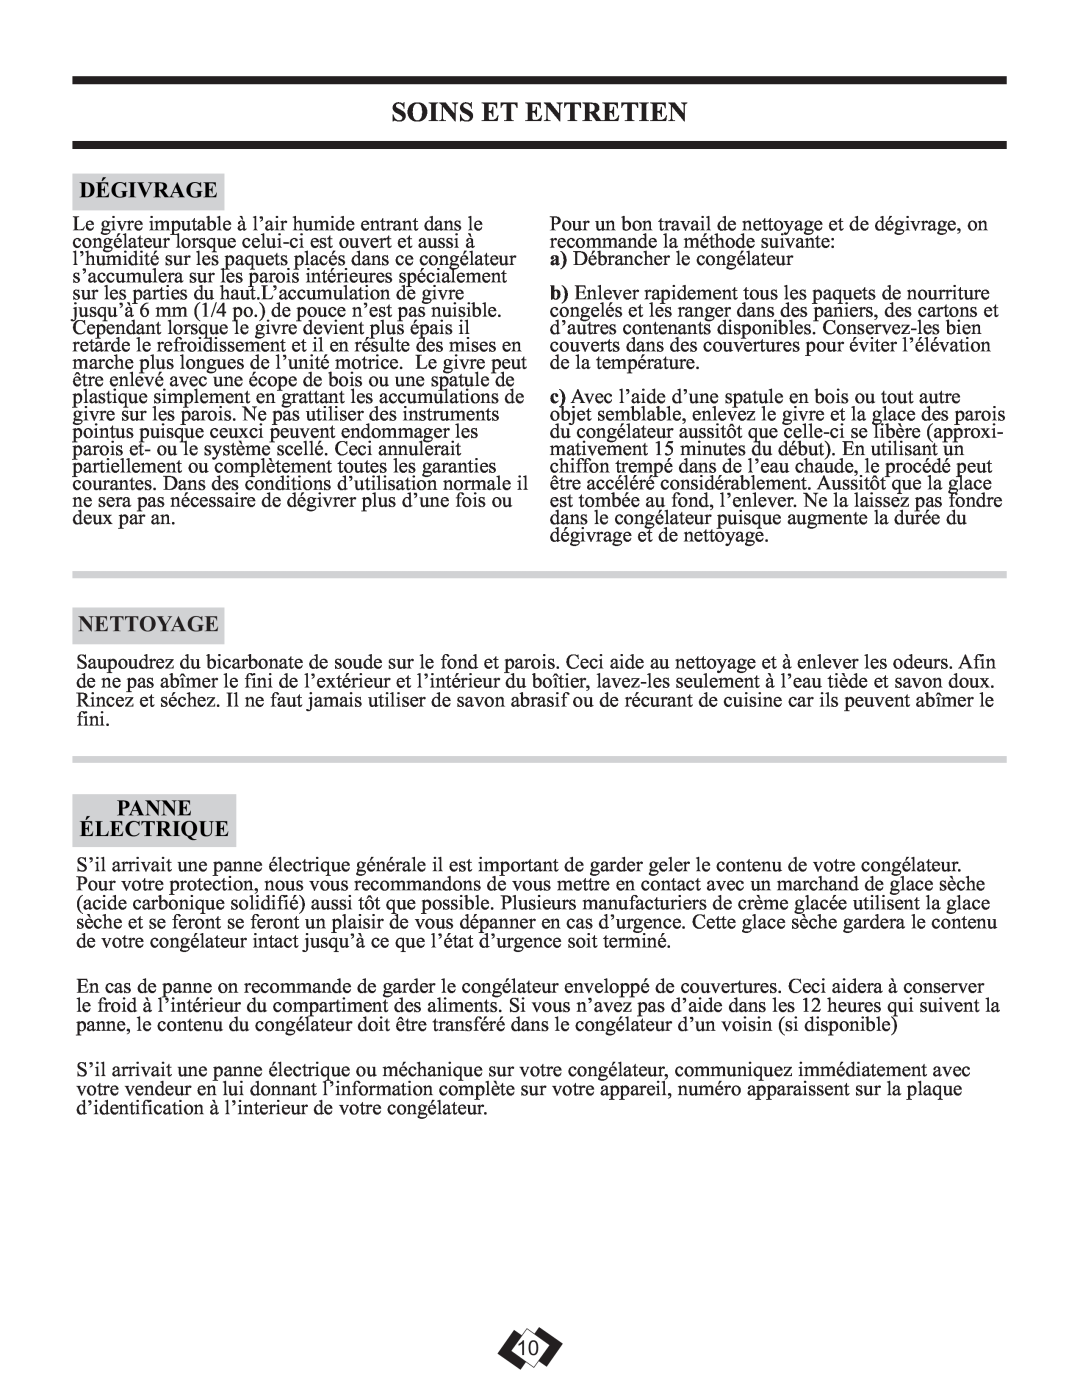 Danby DCFM246WDD manual Soins Et Entretien, Dégivrage, Nettoyage, Panne Électrique 